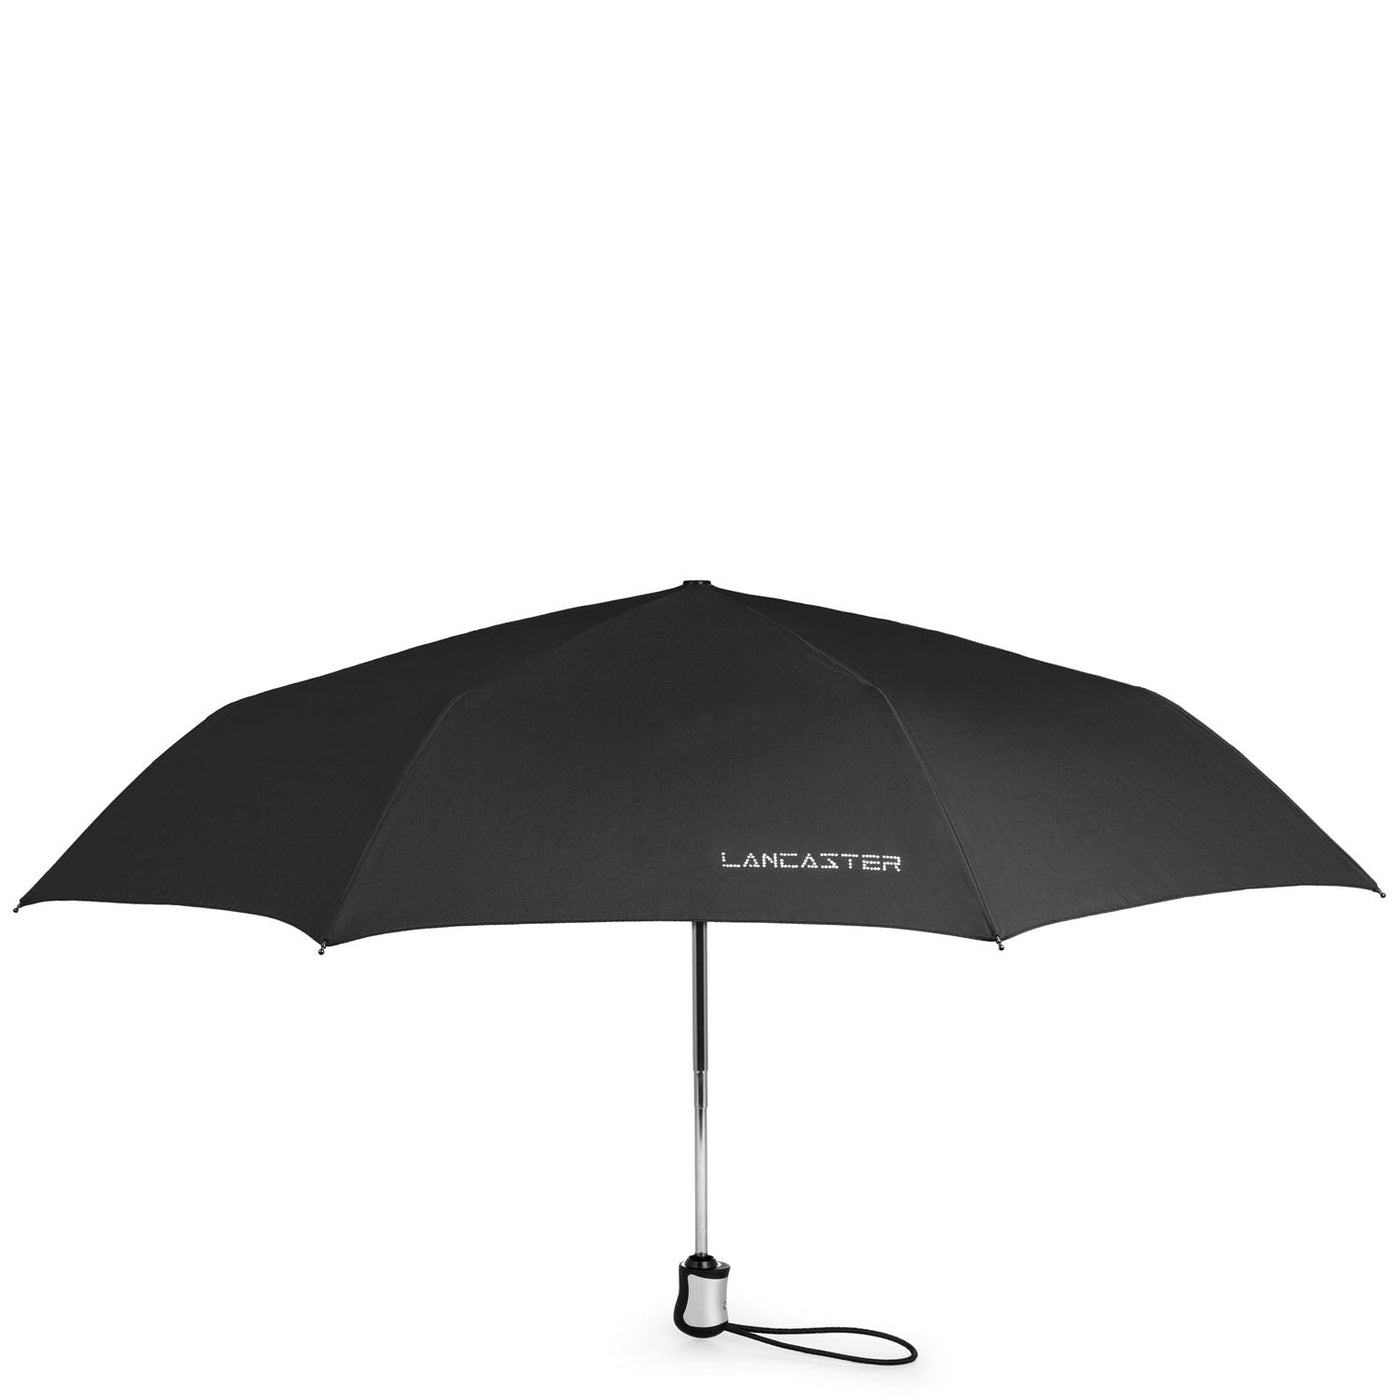 umbrella - accessoires parapluies #couleur_noir-strass